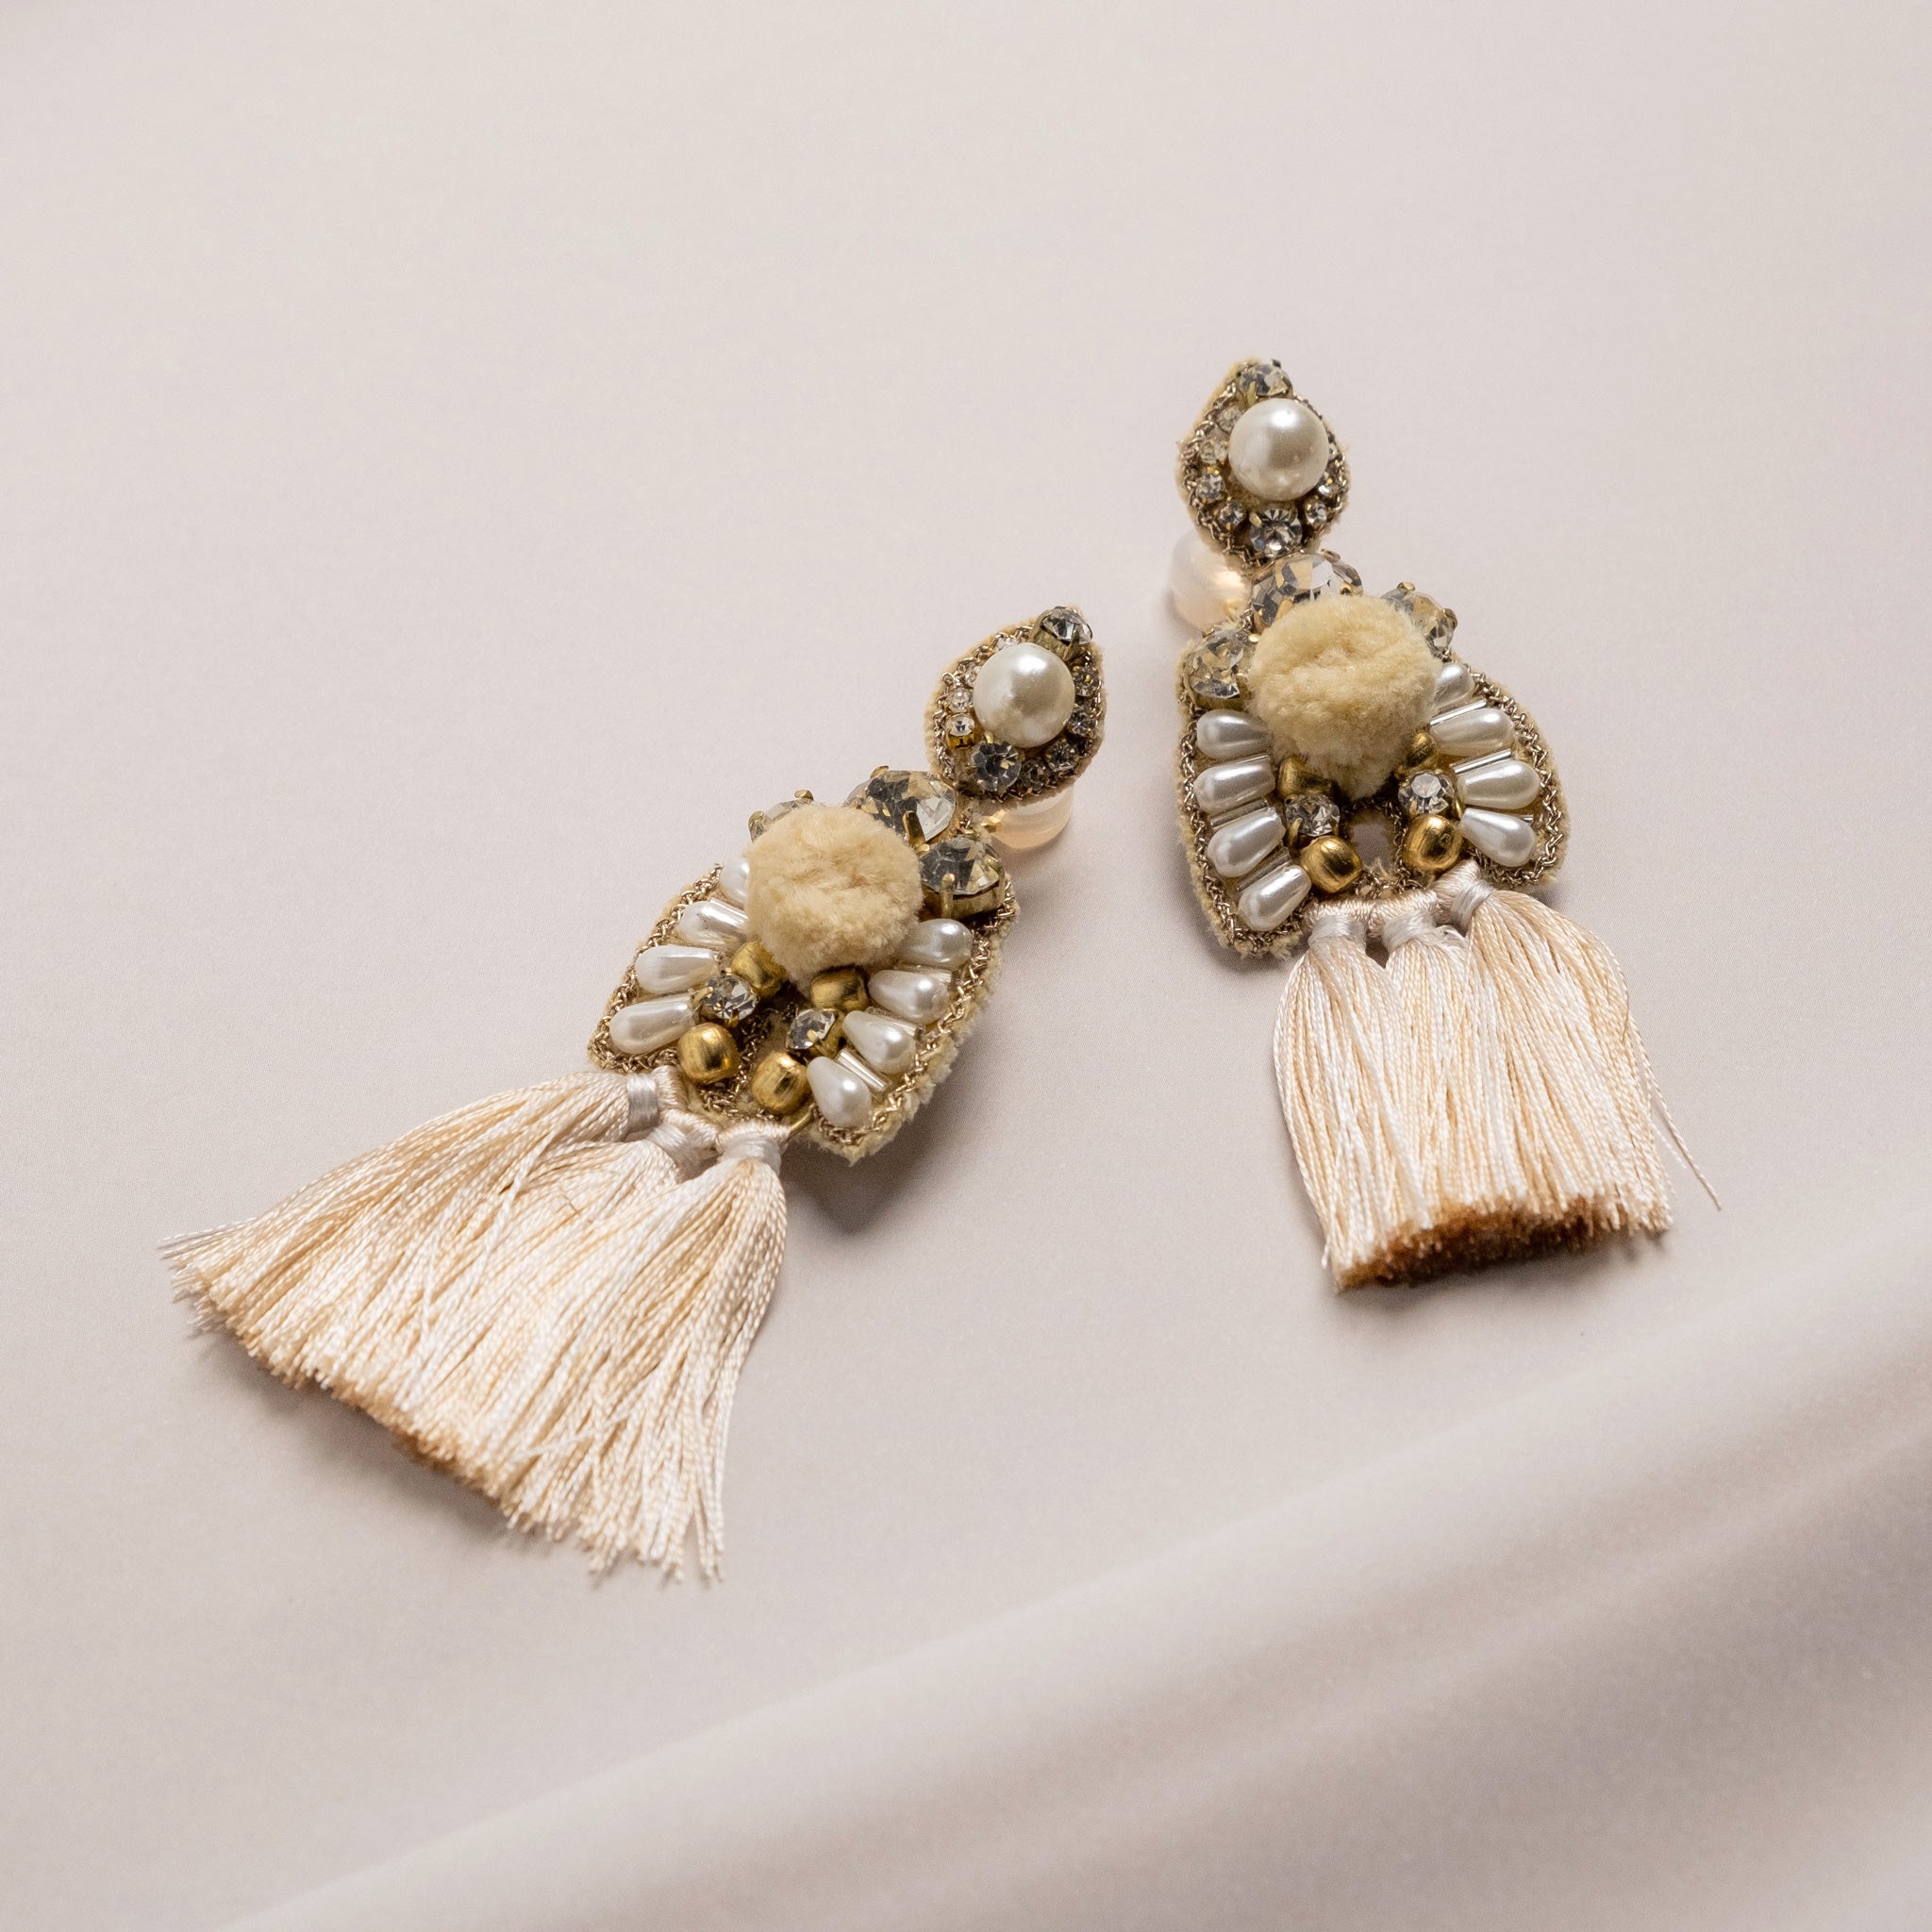 Pearl x Bonbon x Tassel earrings